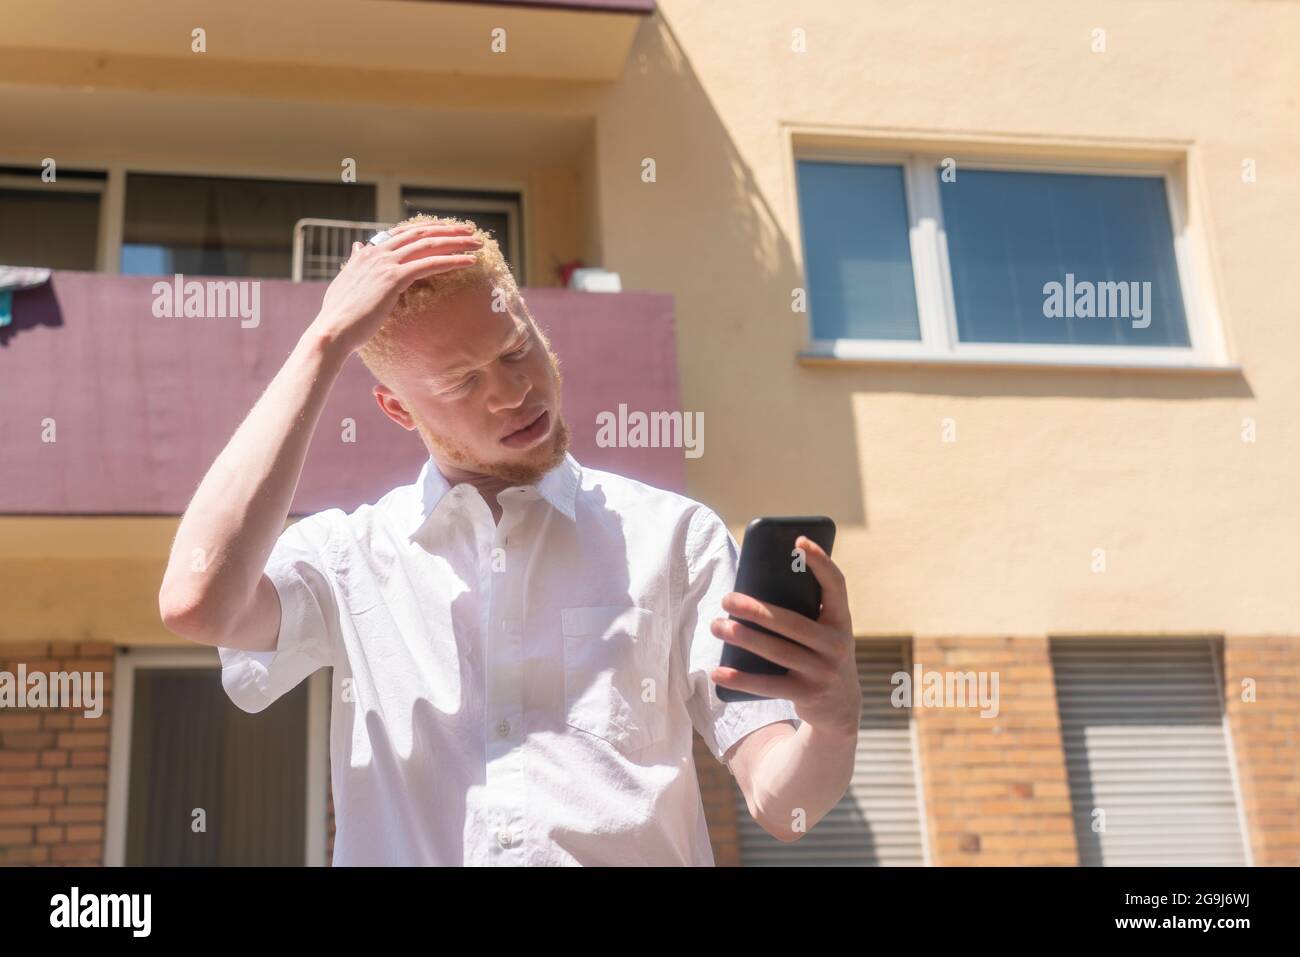 Allemagne, Cologne, Albino homme en chemise blanche tenant un smartphone Banque D'Images